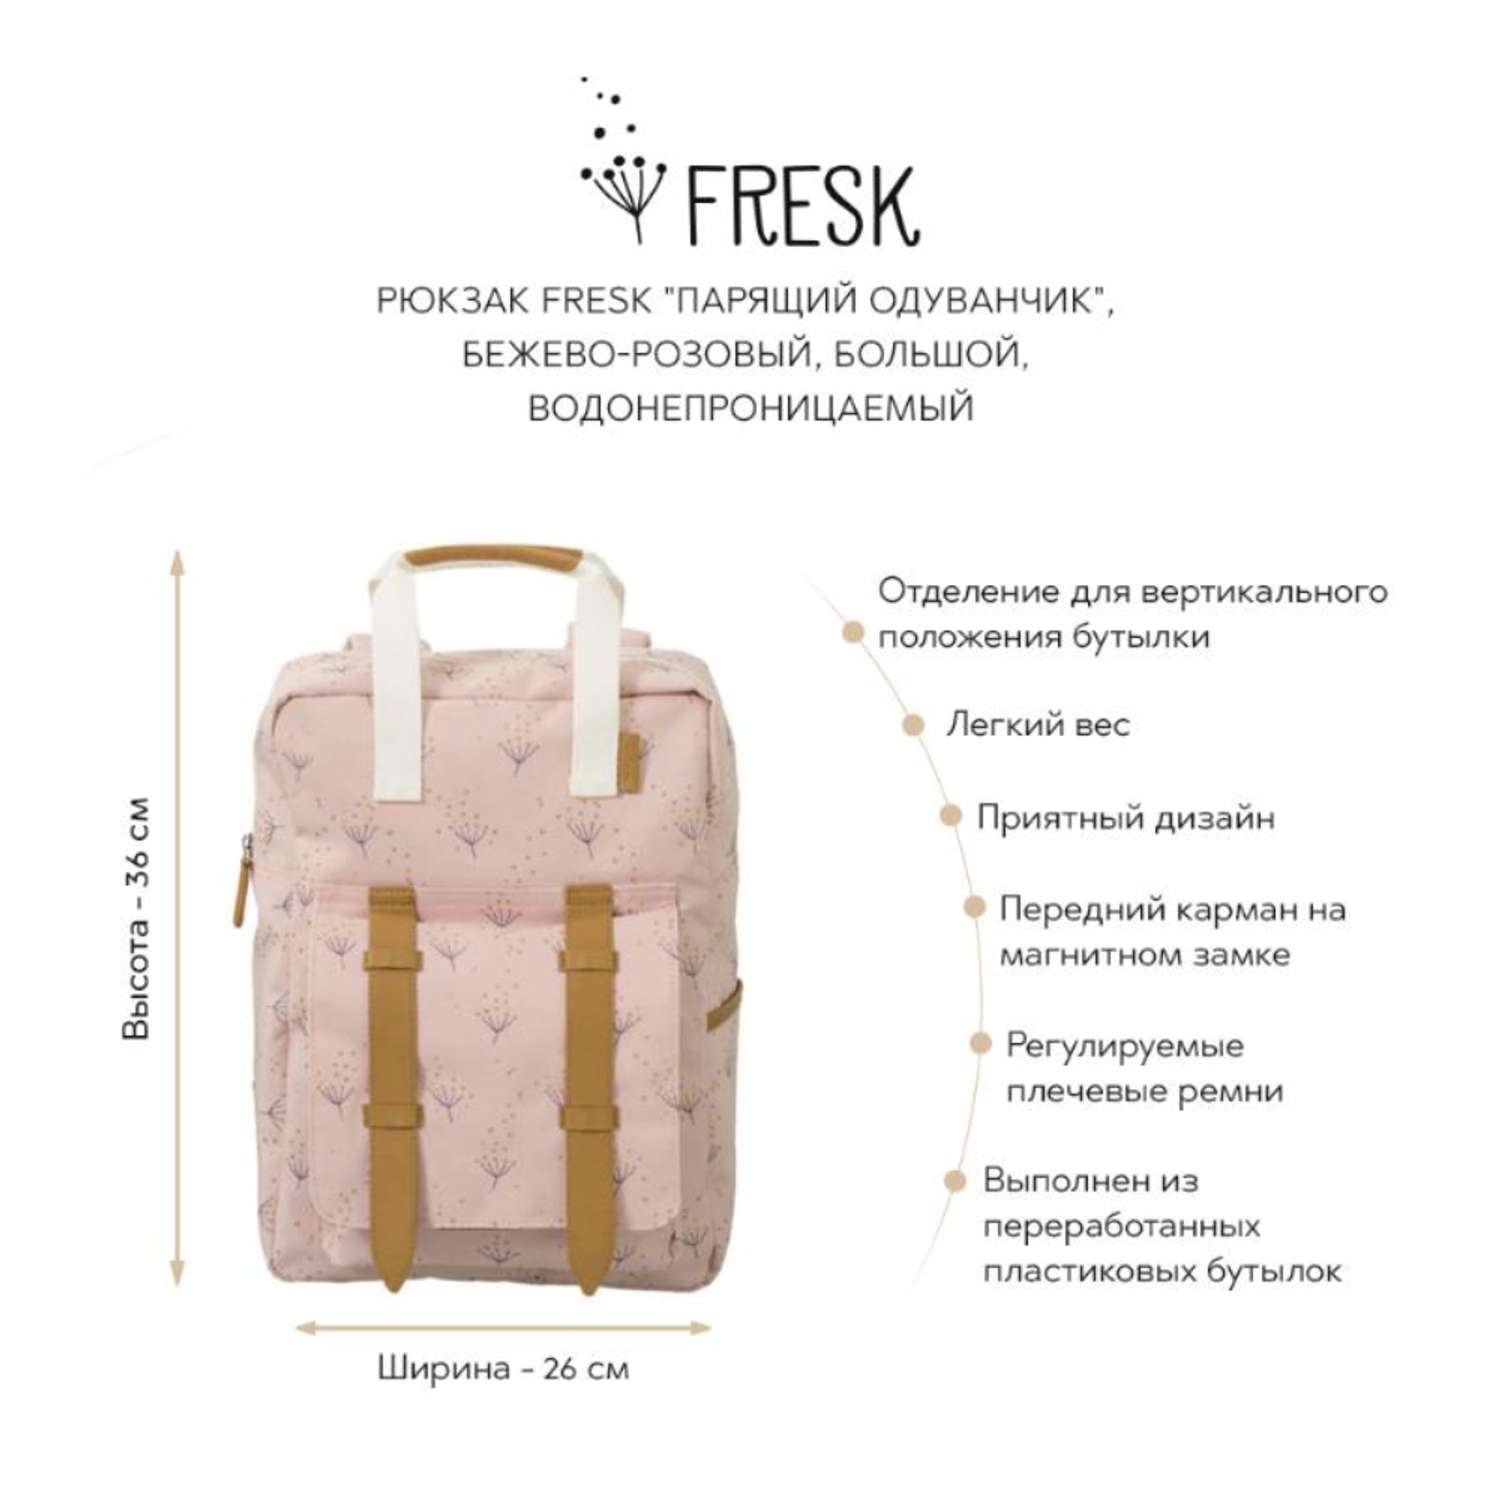 Рюкзак Fresk Парящий одуванчик бежево-розовый водонепроницаемый большой - фото 2